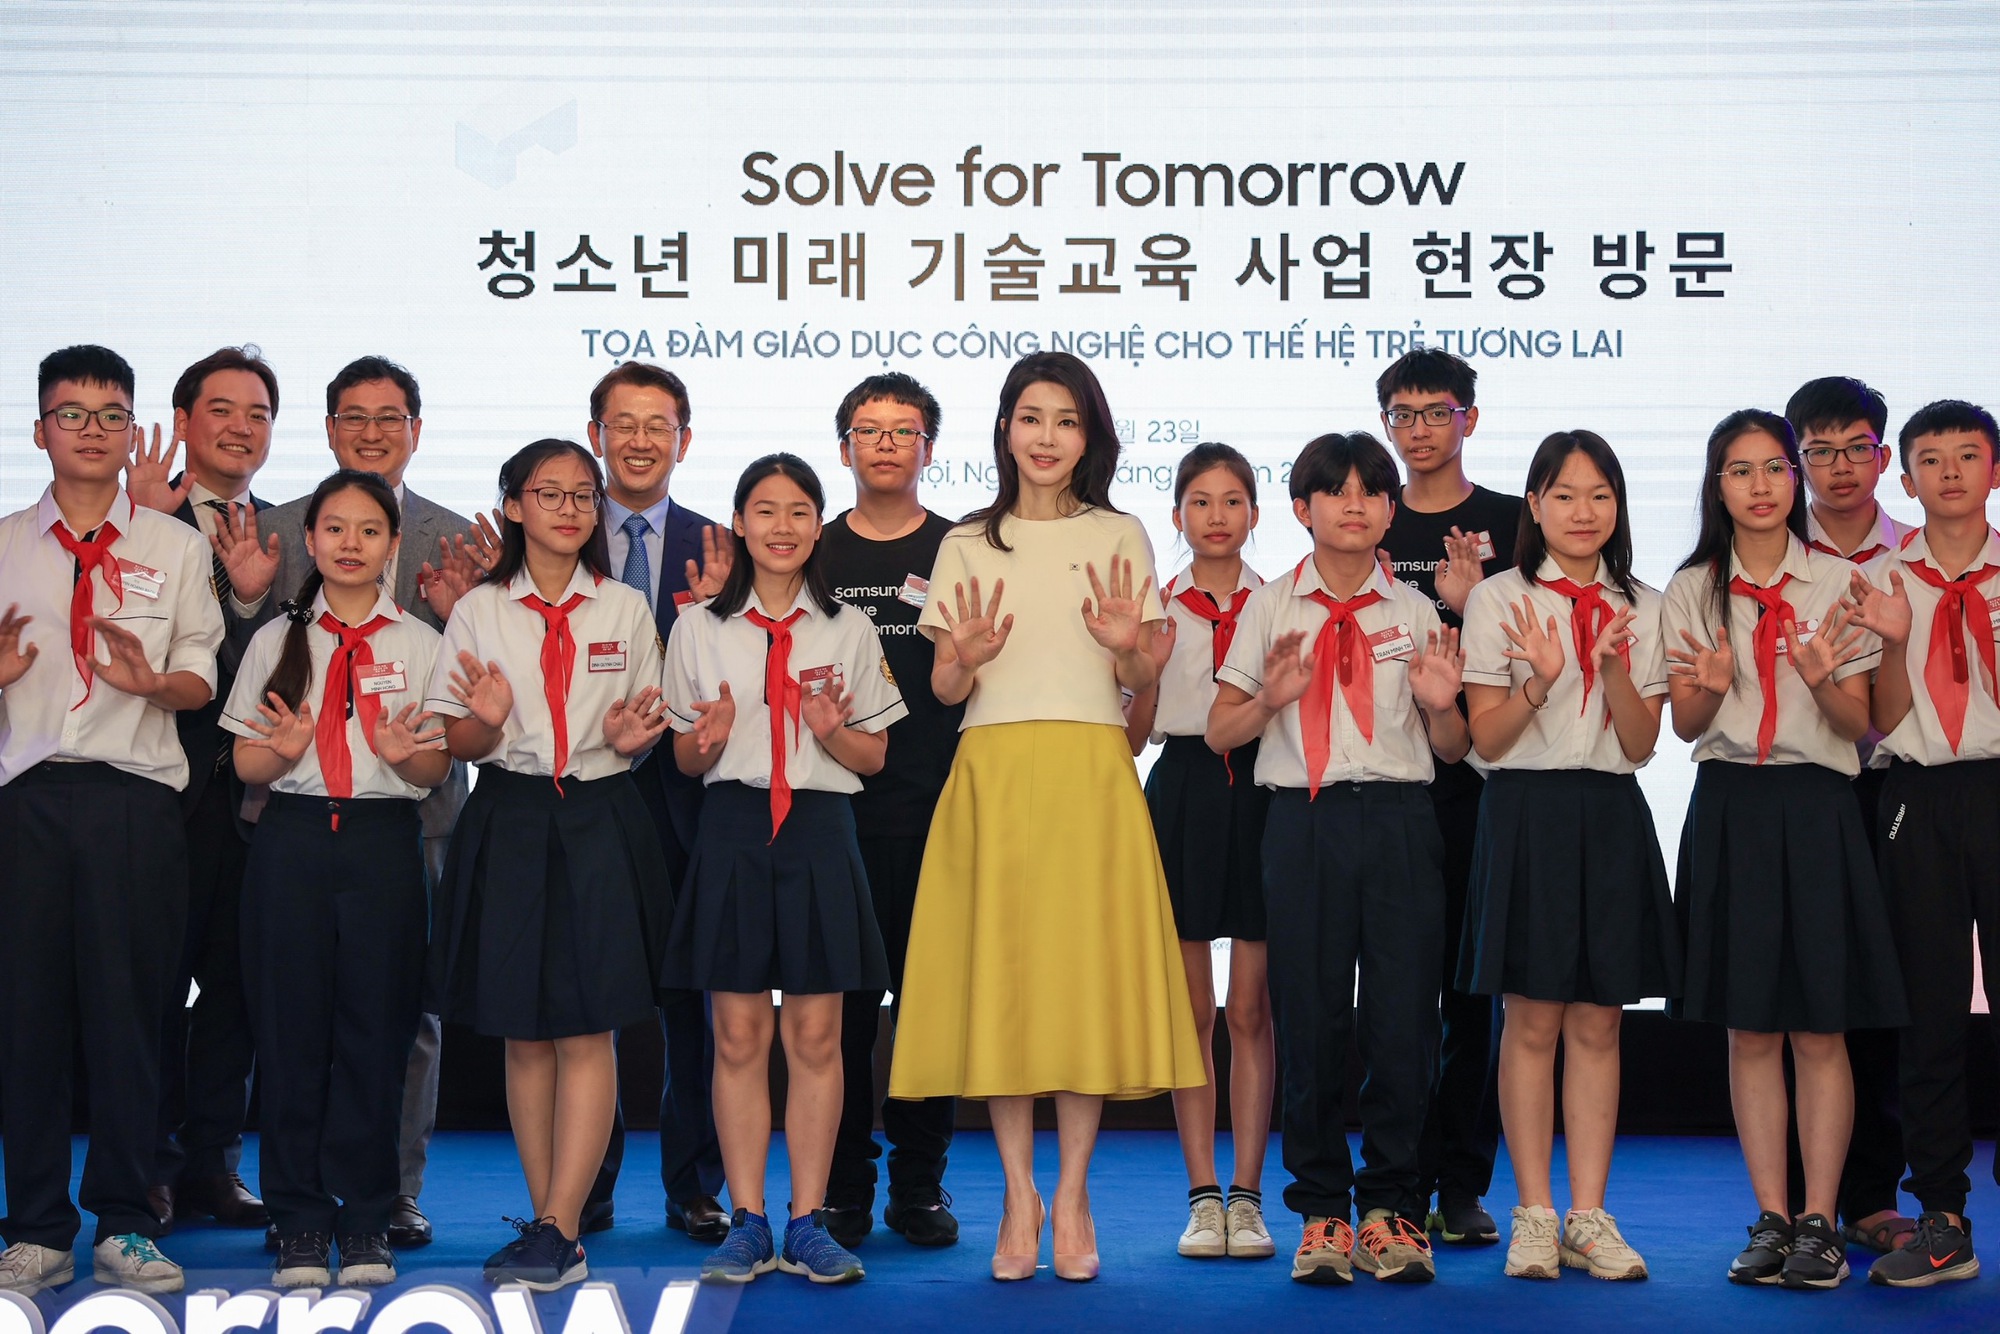 Phu nhân Tổng thống Hàn Quốc động viên học sinh Việt Nam dự thi Solve for Tomorrow - Ảnh 3.